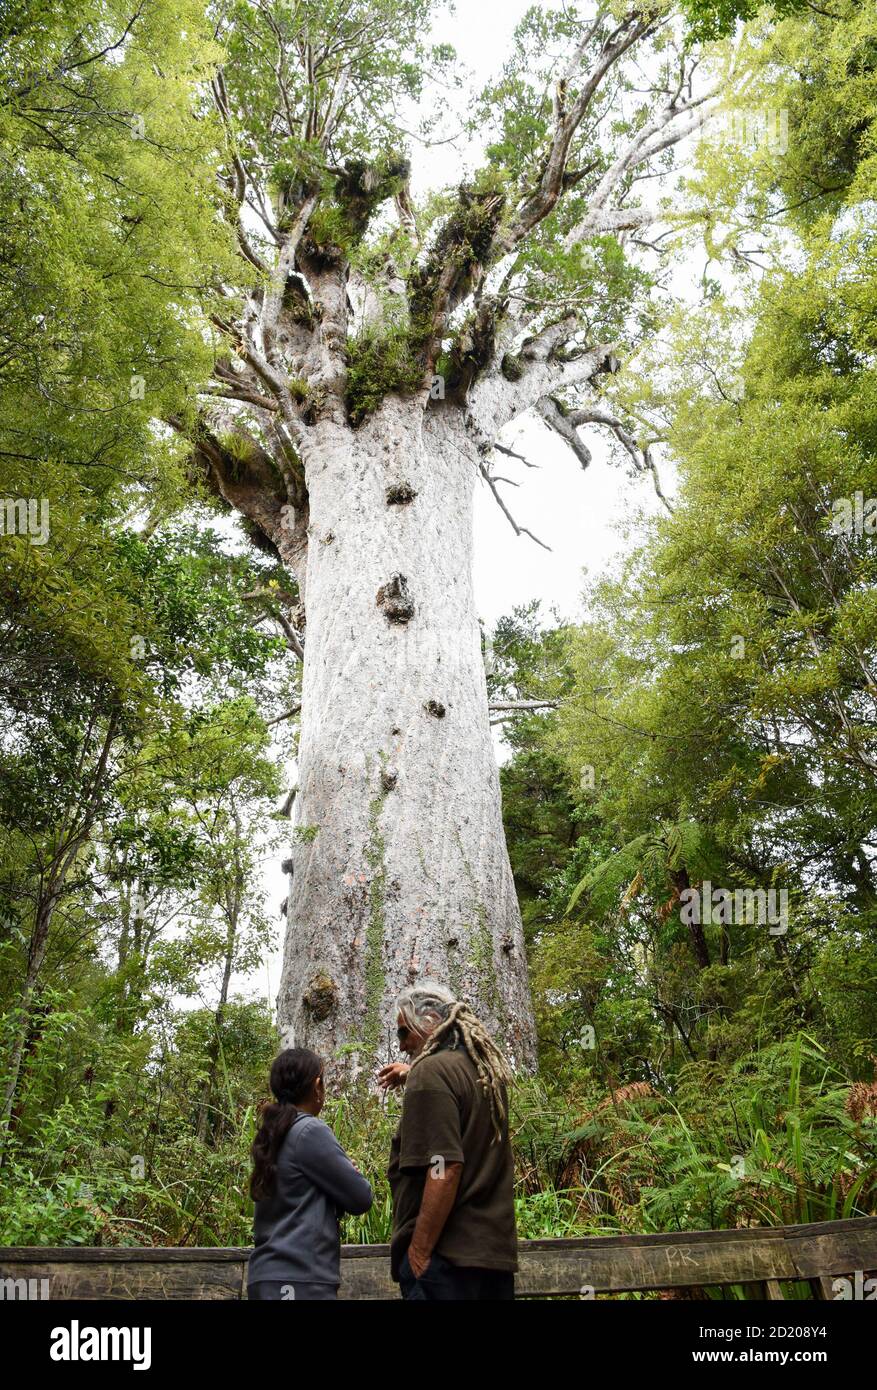 Northland, Nuova Zelanda. 6 Ott 2020. La gente guarda un albero di kauri alla foresta di Waipoua in Northland, Nuova Zelanda, 6 ottobre 2020. Waipoua, e le foreste adiacenti, costituiscono il più grande tratto rimanente di foresta nativa nel Northland e la casa degli alberi di kauri. Credit: Guo Lei/Xinhua/Alamy Live News Foto Stock